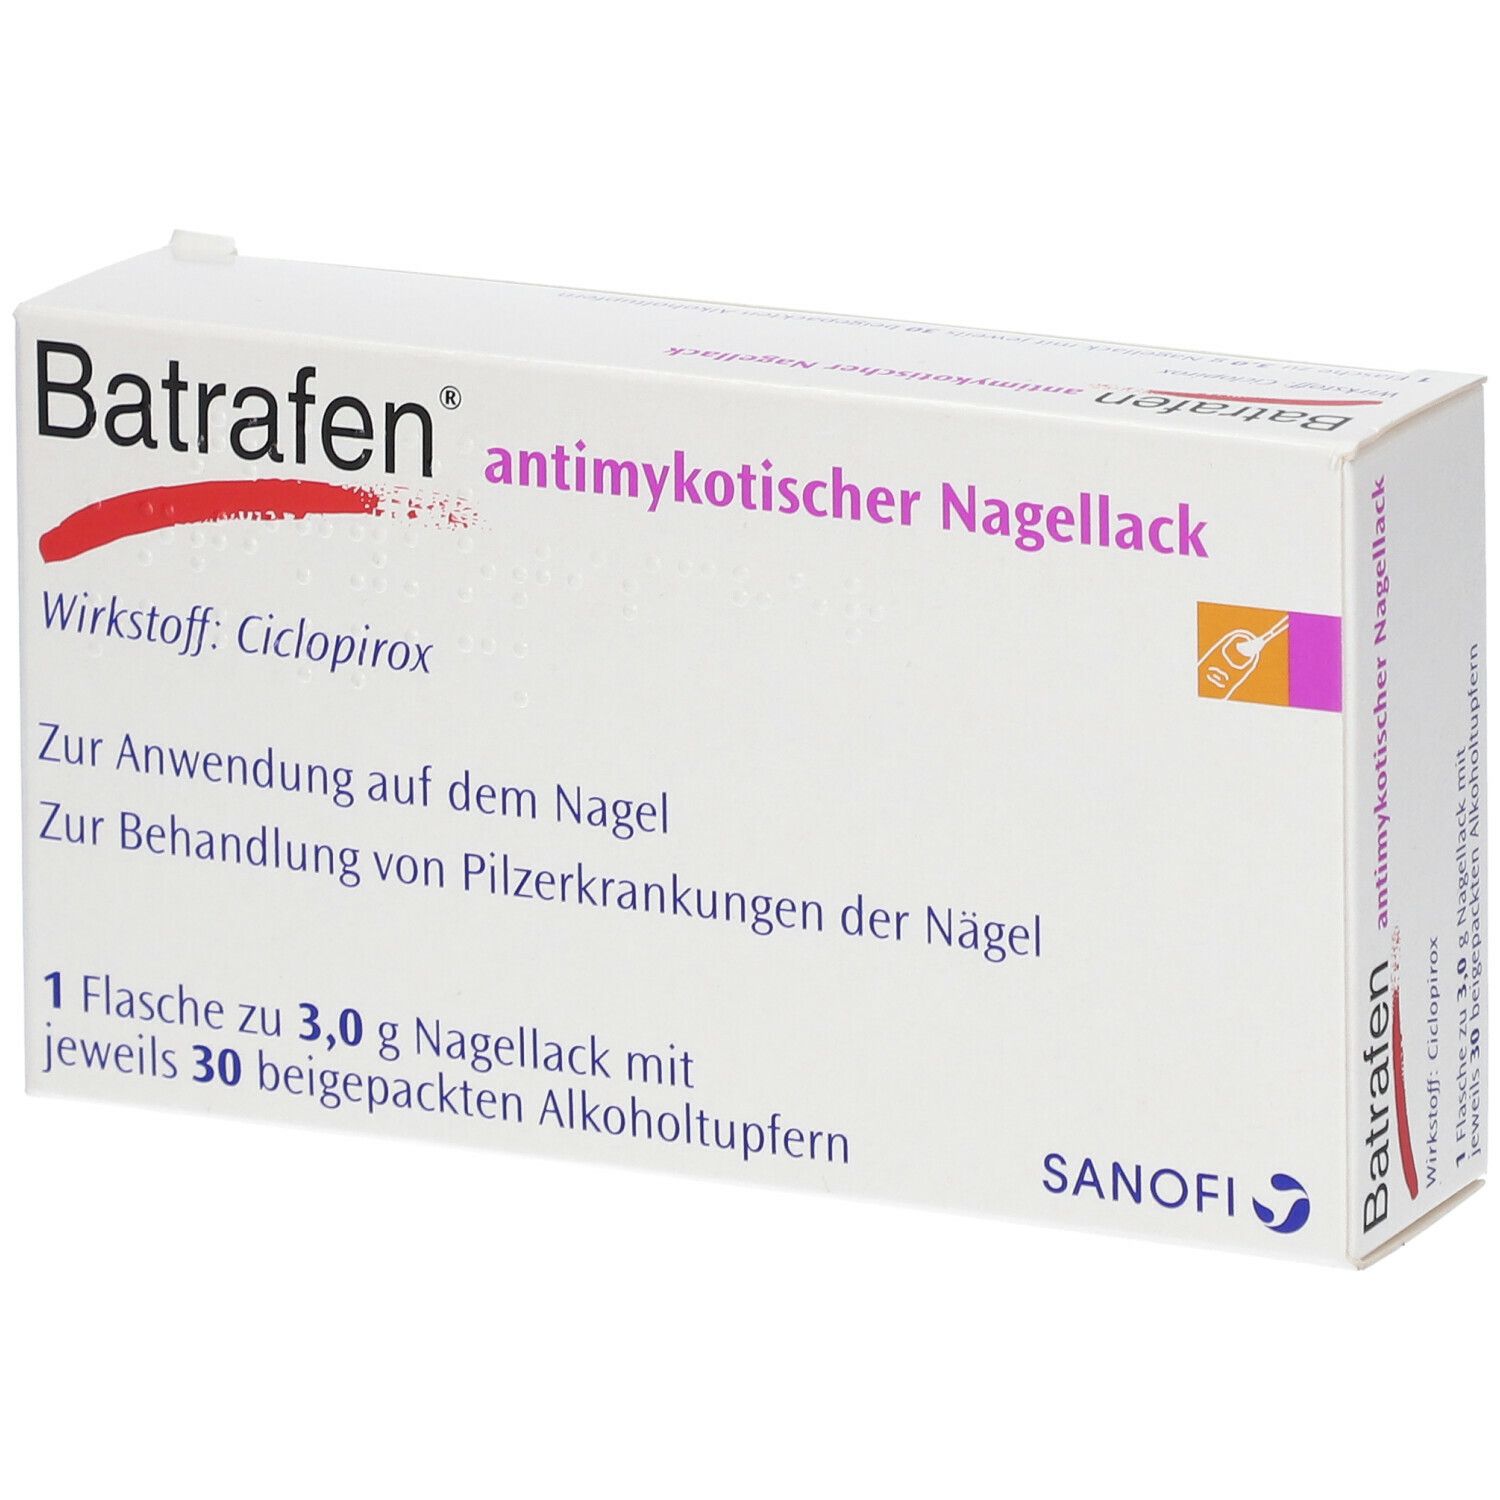 Batrafen® antimykotischer Nagellack 3 g Wirkstoffhaltiger Nagellack